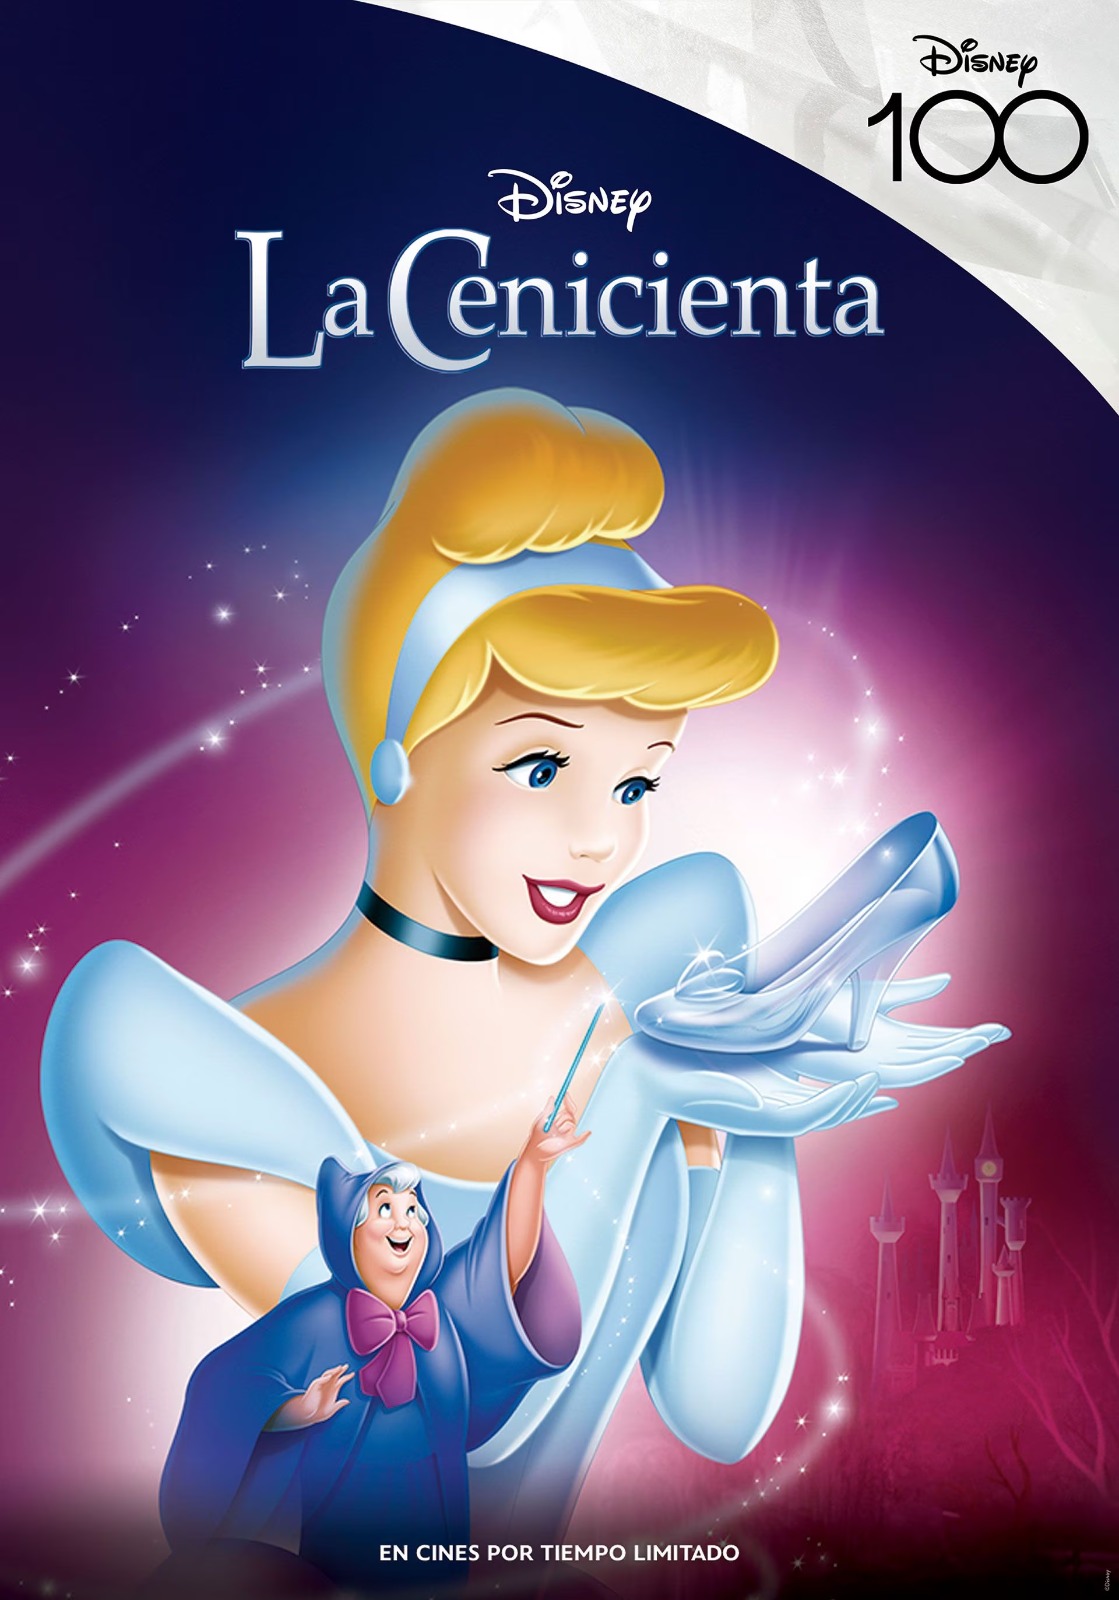 Ciclo De Cine Disney Filmagic Invita A Revivir Historias Inolvidables Unicanal 